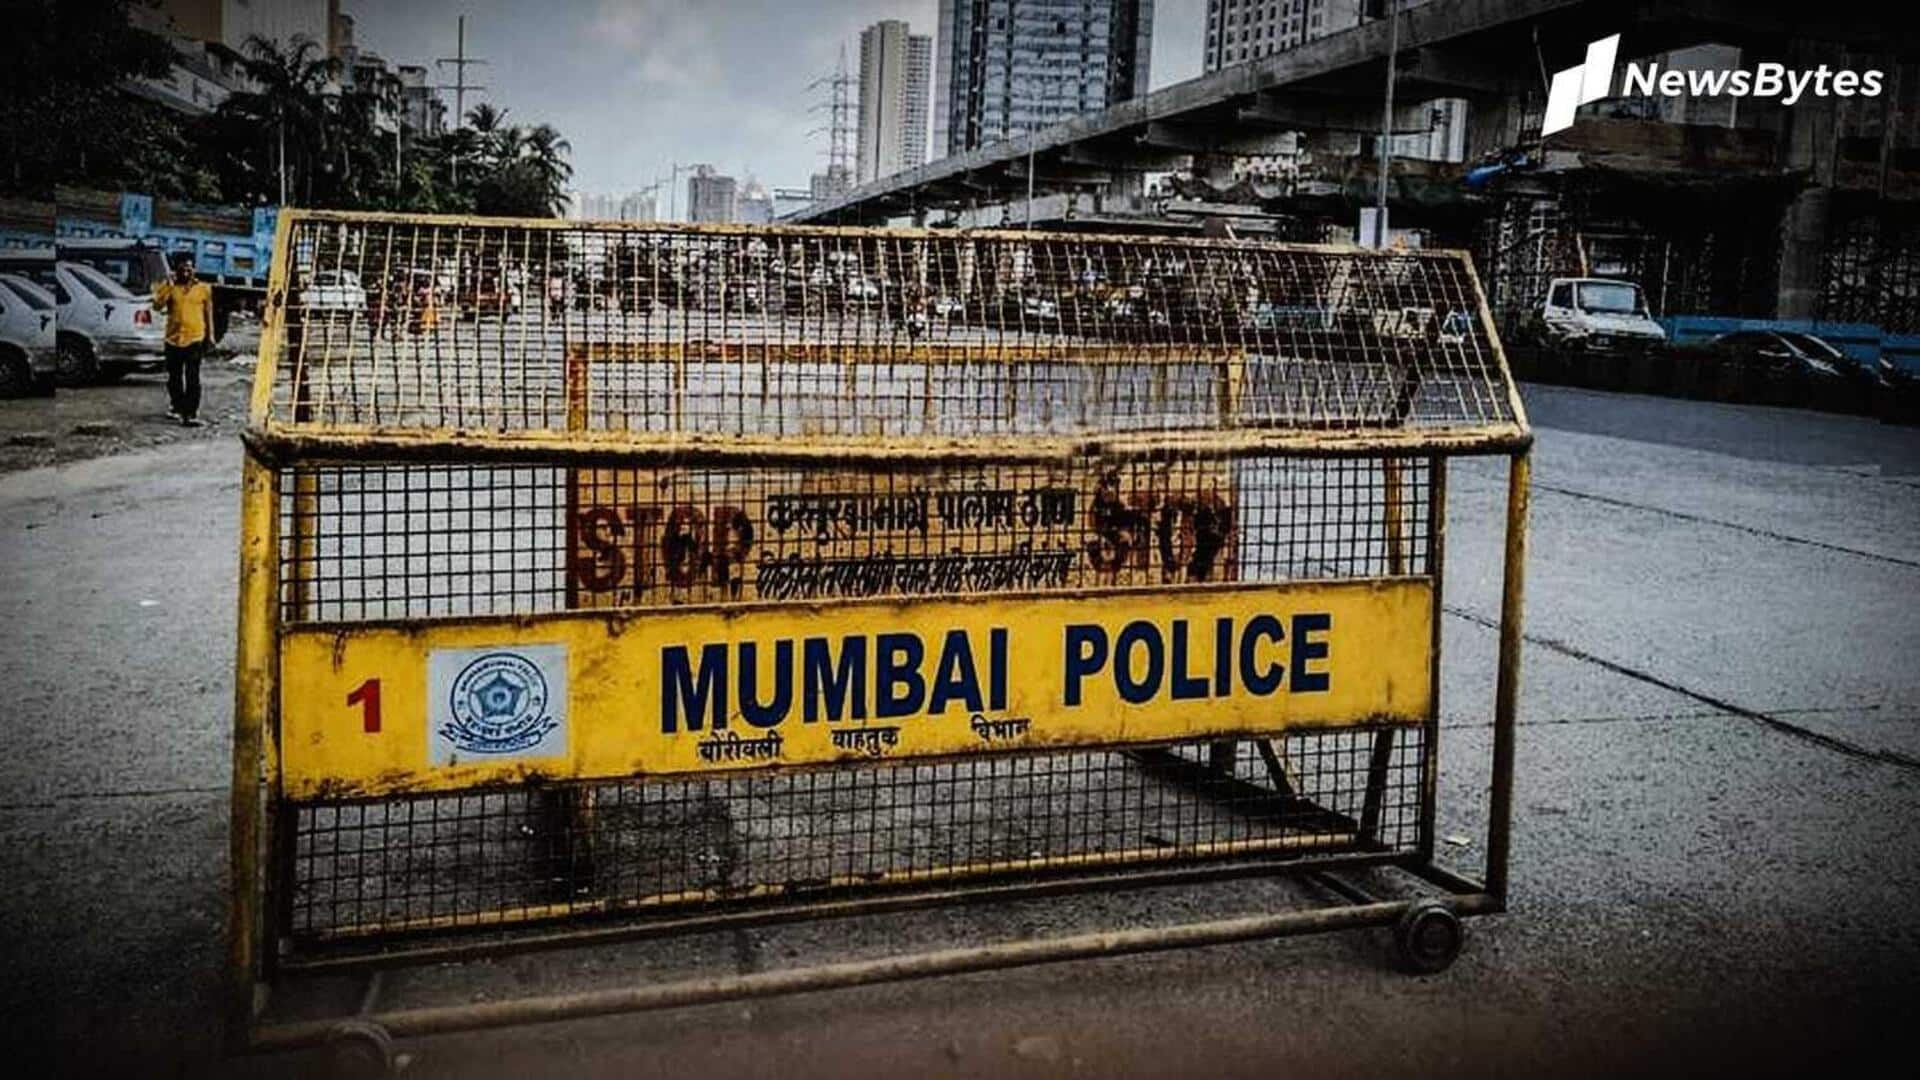 मुंबई: व्यक्ति ने पुलिस को दी शहर में बम धमाके करने की धमकी, पकड़ा गया